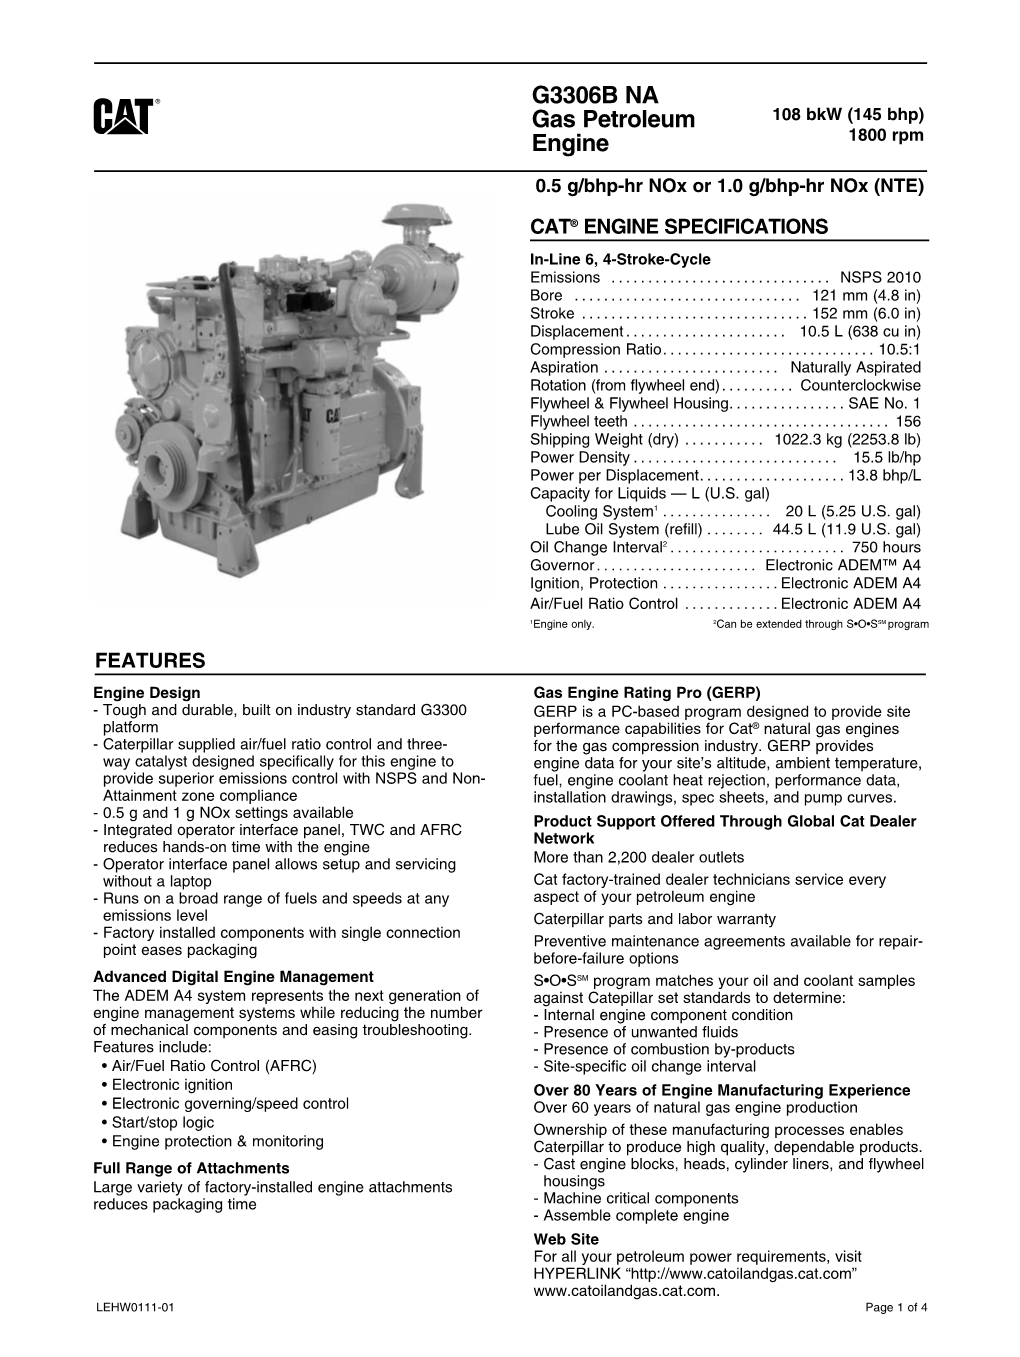 G3306B NA GAS PETROLEUM ENGINE 108 Bkw (145 Bhp)